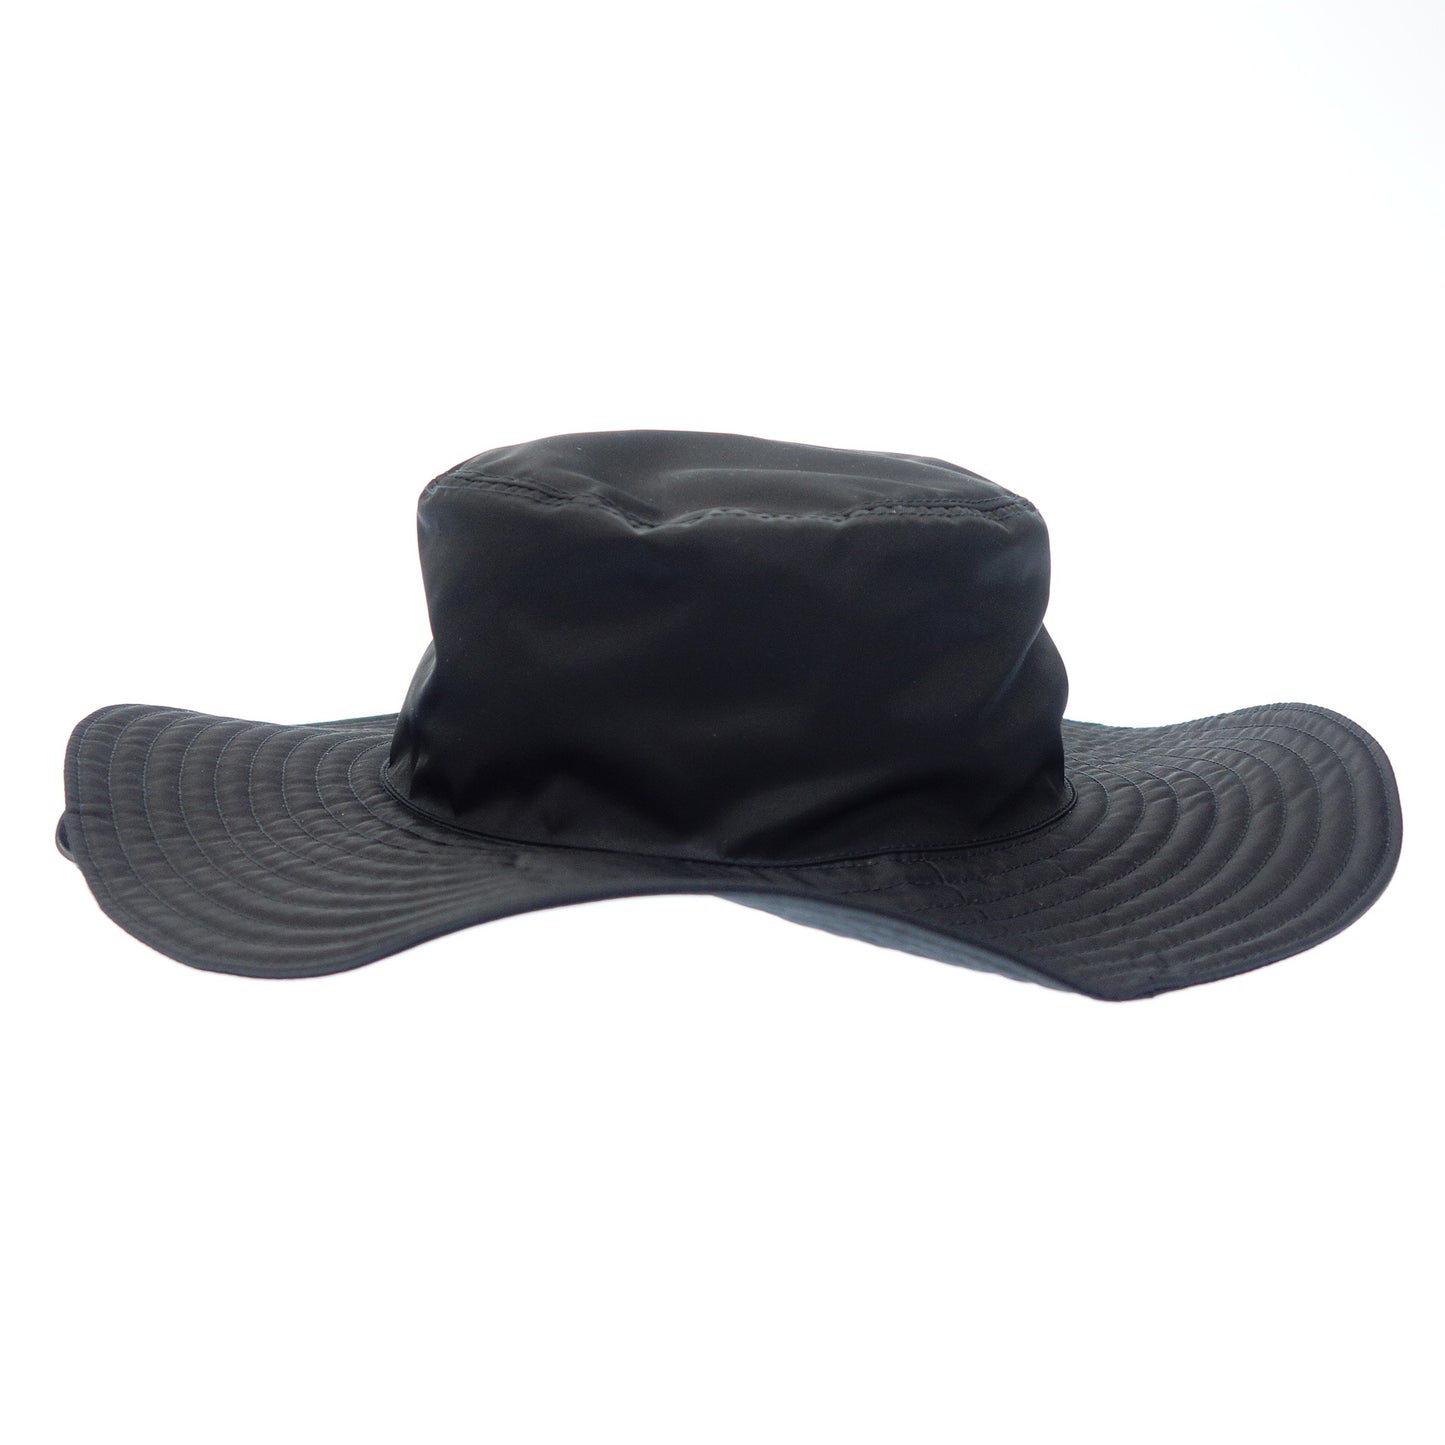 状况非常好 ◆ Prada 渔夫帽再生尼龙黑色 尺寸 L P101 2021 27394 PRADA [AFI1] 